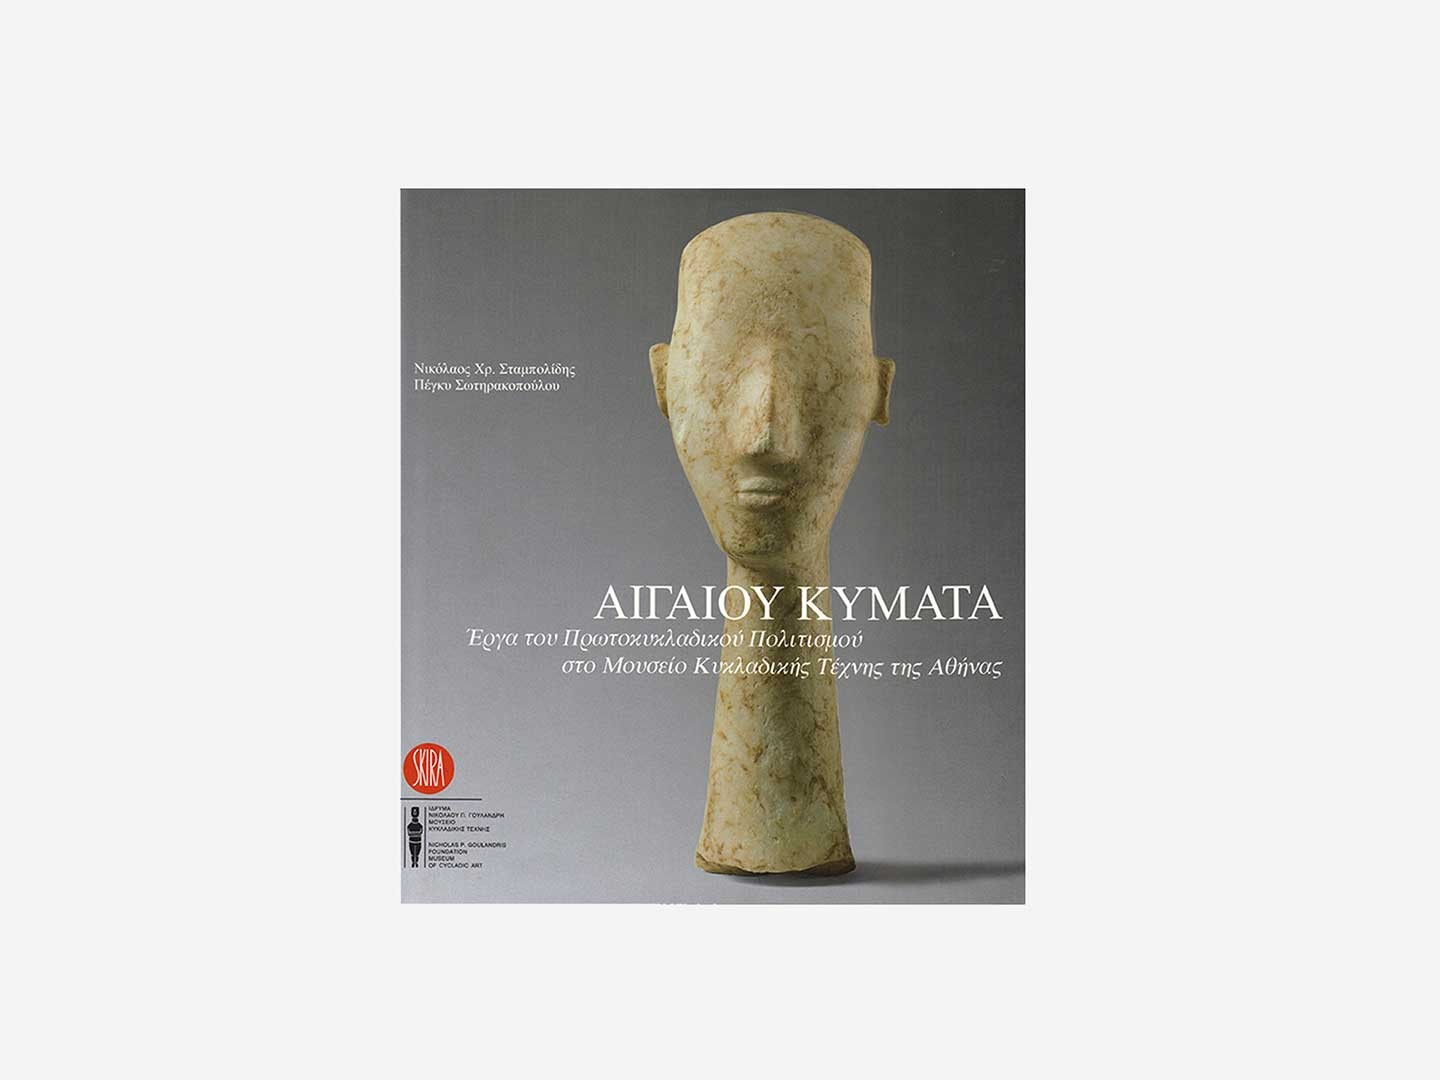 Αιγαίου Κύματα. Έργα του Πρωτοκυκλαδικού πολιτισμού στο Μουσείο Κυκλαδικής Τέχνης της Αθήνας – Μαλακό Εξώφυλλο